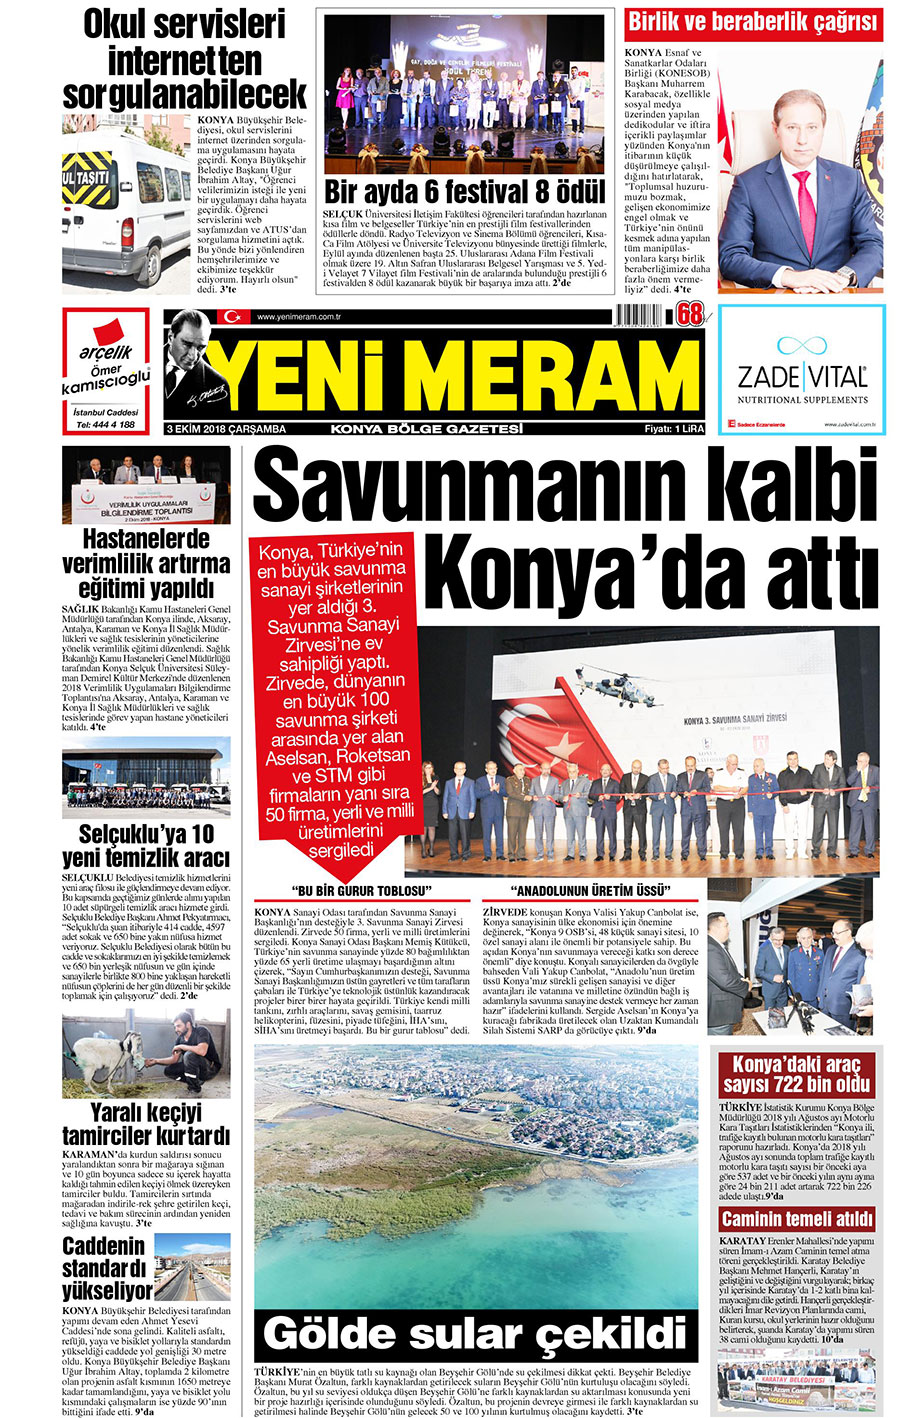 3 Ekim 2018 Yeni Meram Gazetesi